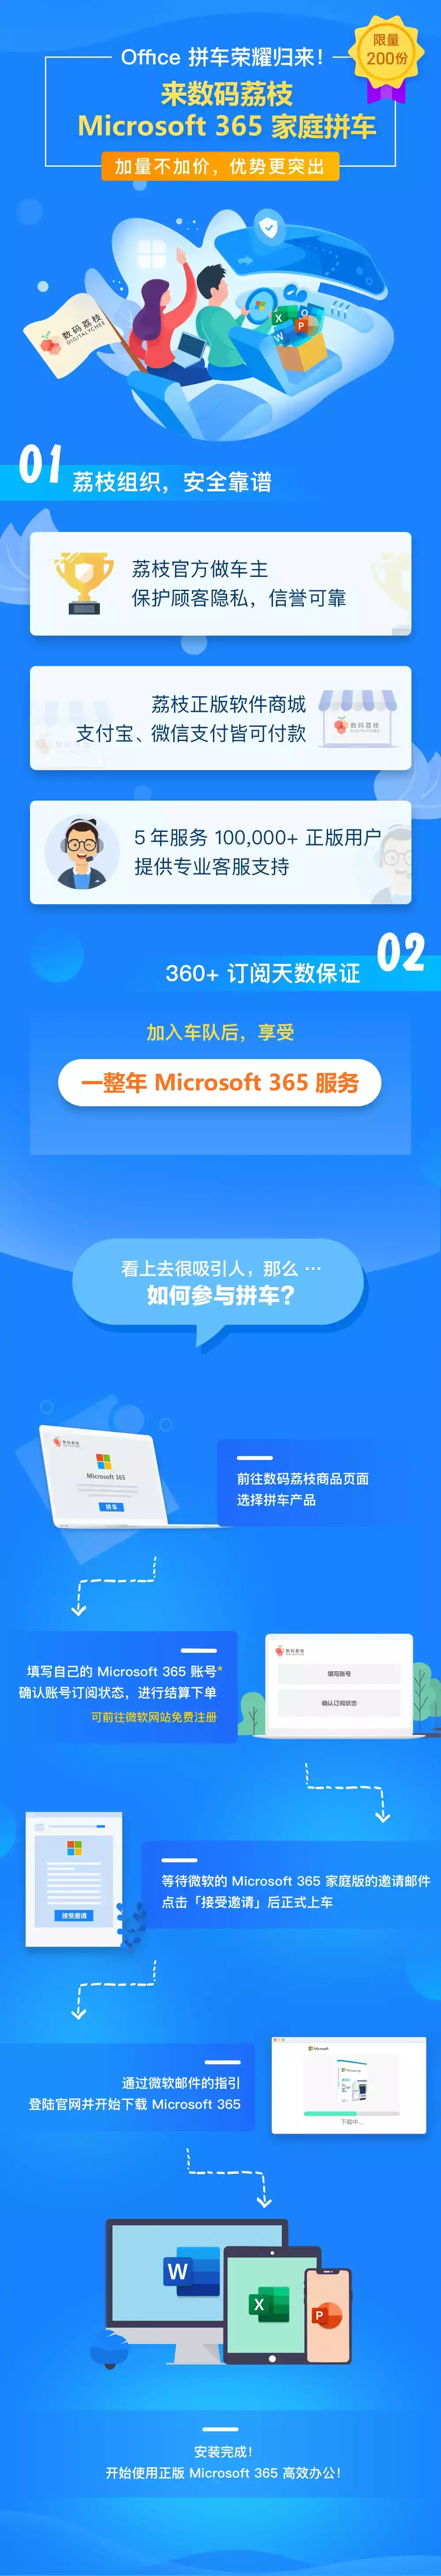 【正版特惠】Office 365 官方订阅一年拼团 99元/年